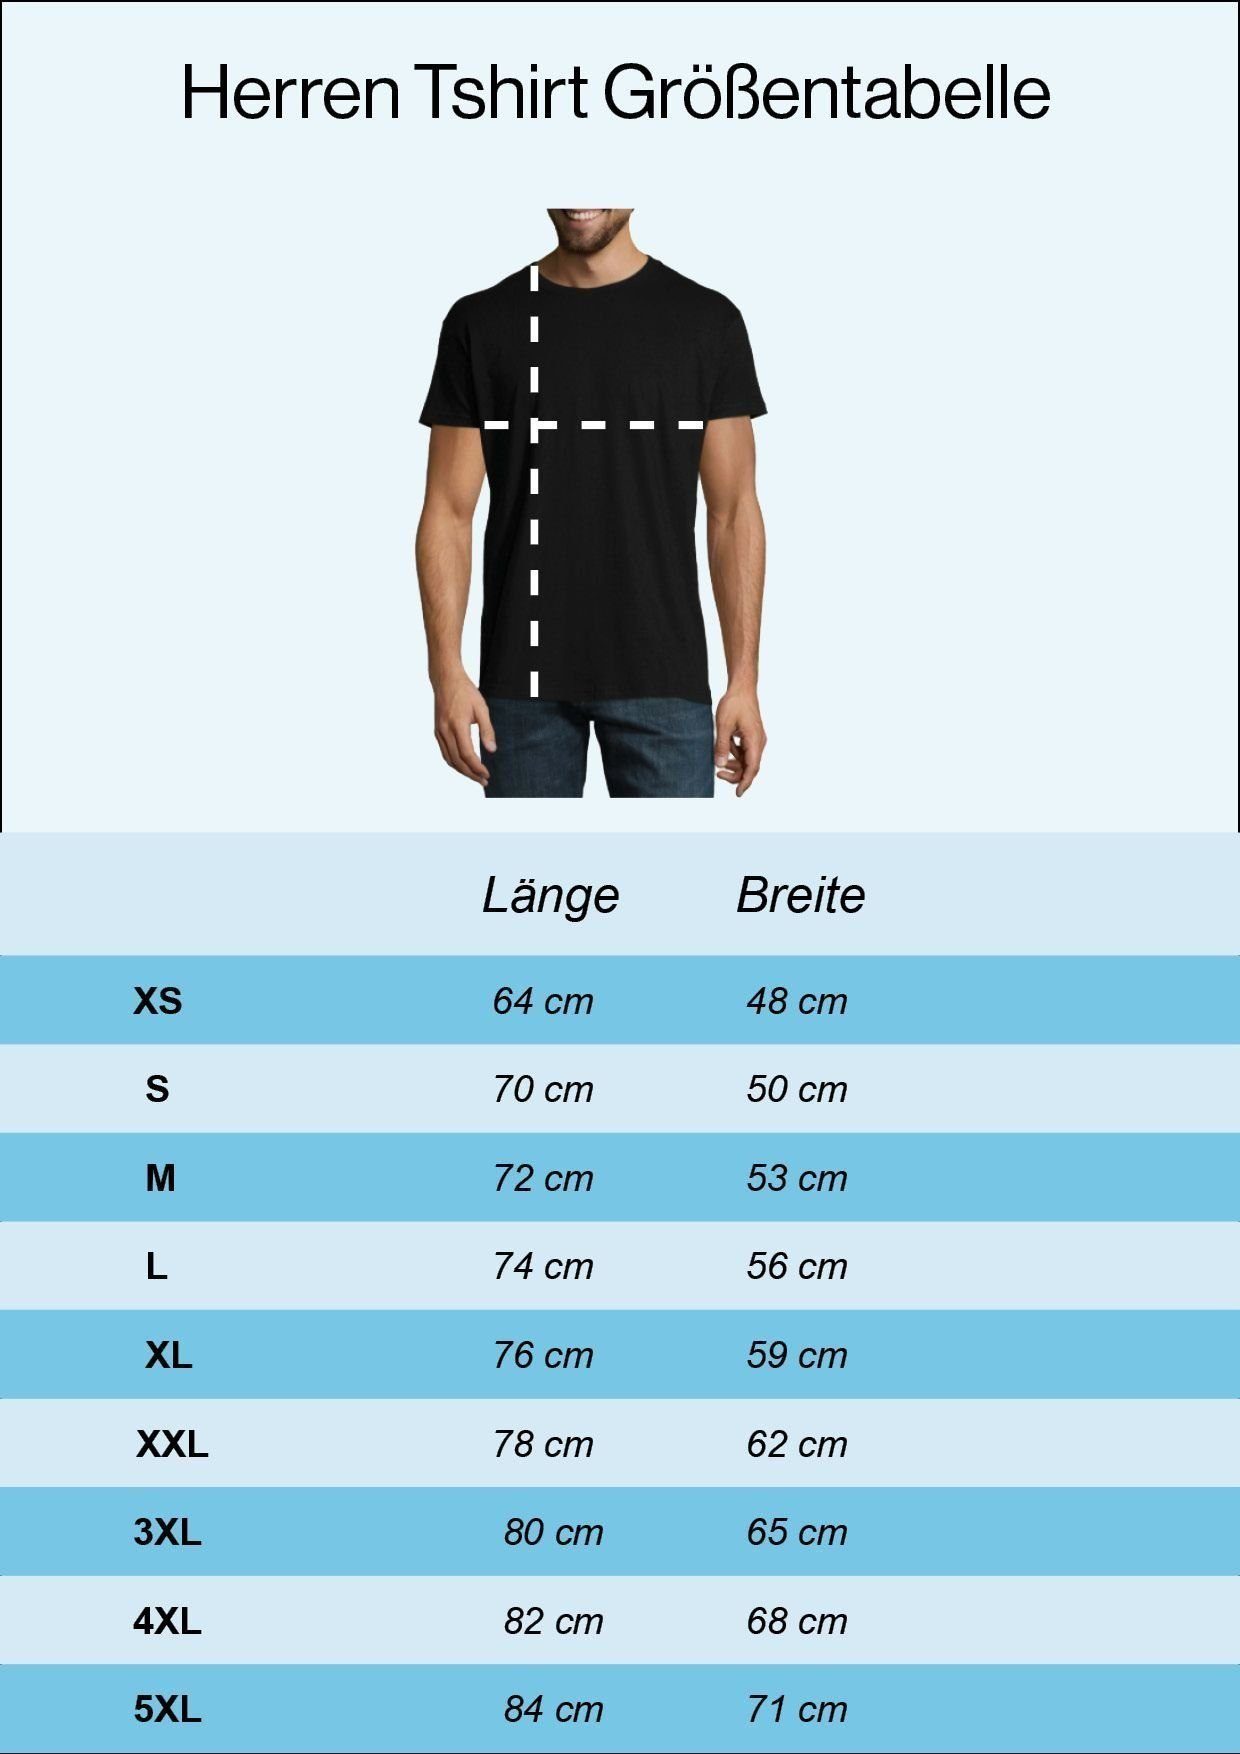 Youth Designz Moin Herren Aufdruck Anker Print-Shirt modischem mit Logo T-Shirt Navyblau Spruch